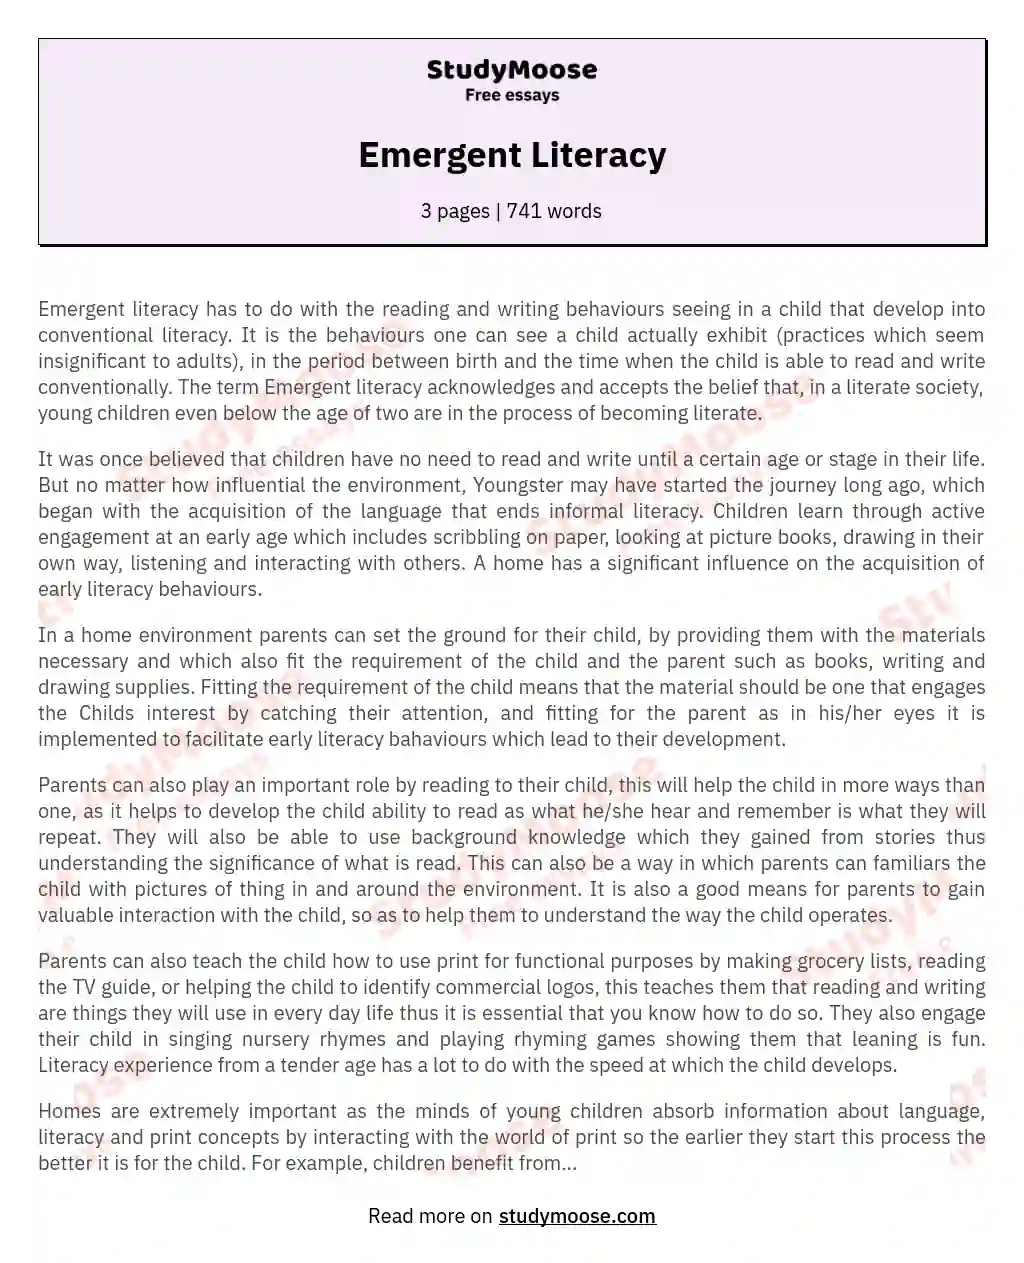 Emergent Literacy essay